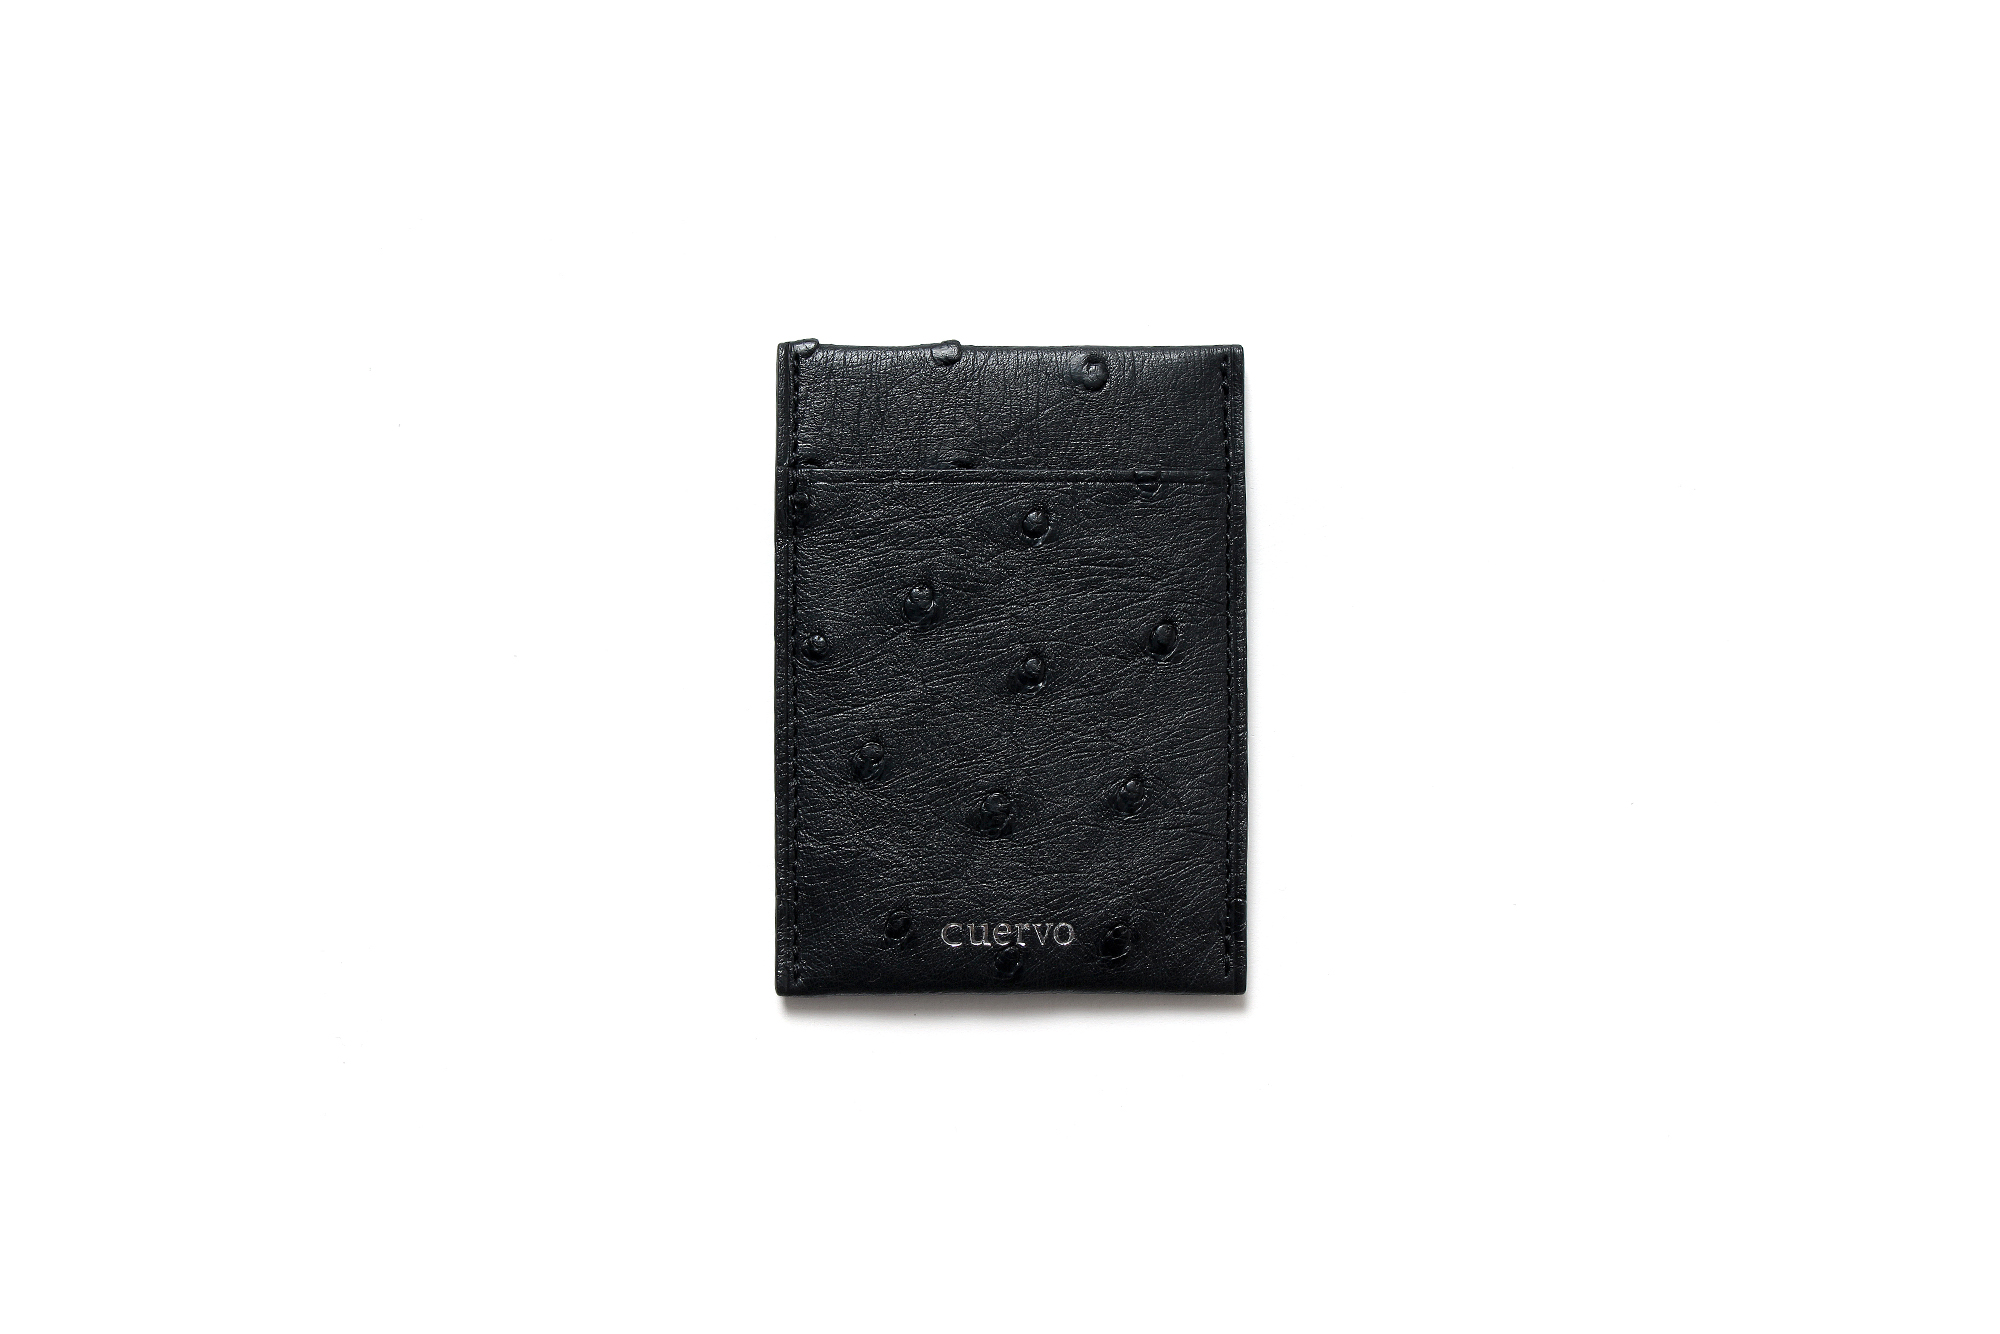 cuervo bopoha (クエルボ ヴァローナ) Thelonious (セロニアス) Ostrich Leather (オーストリッチレザー) カードケース BLACK (ブラック) Made in Japan (日本製) 2021 愛知 名古屋 Alto e Diritto altoediritto アルトエデリット エキゾチックレザー